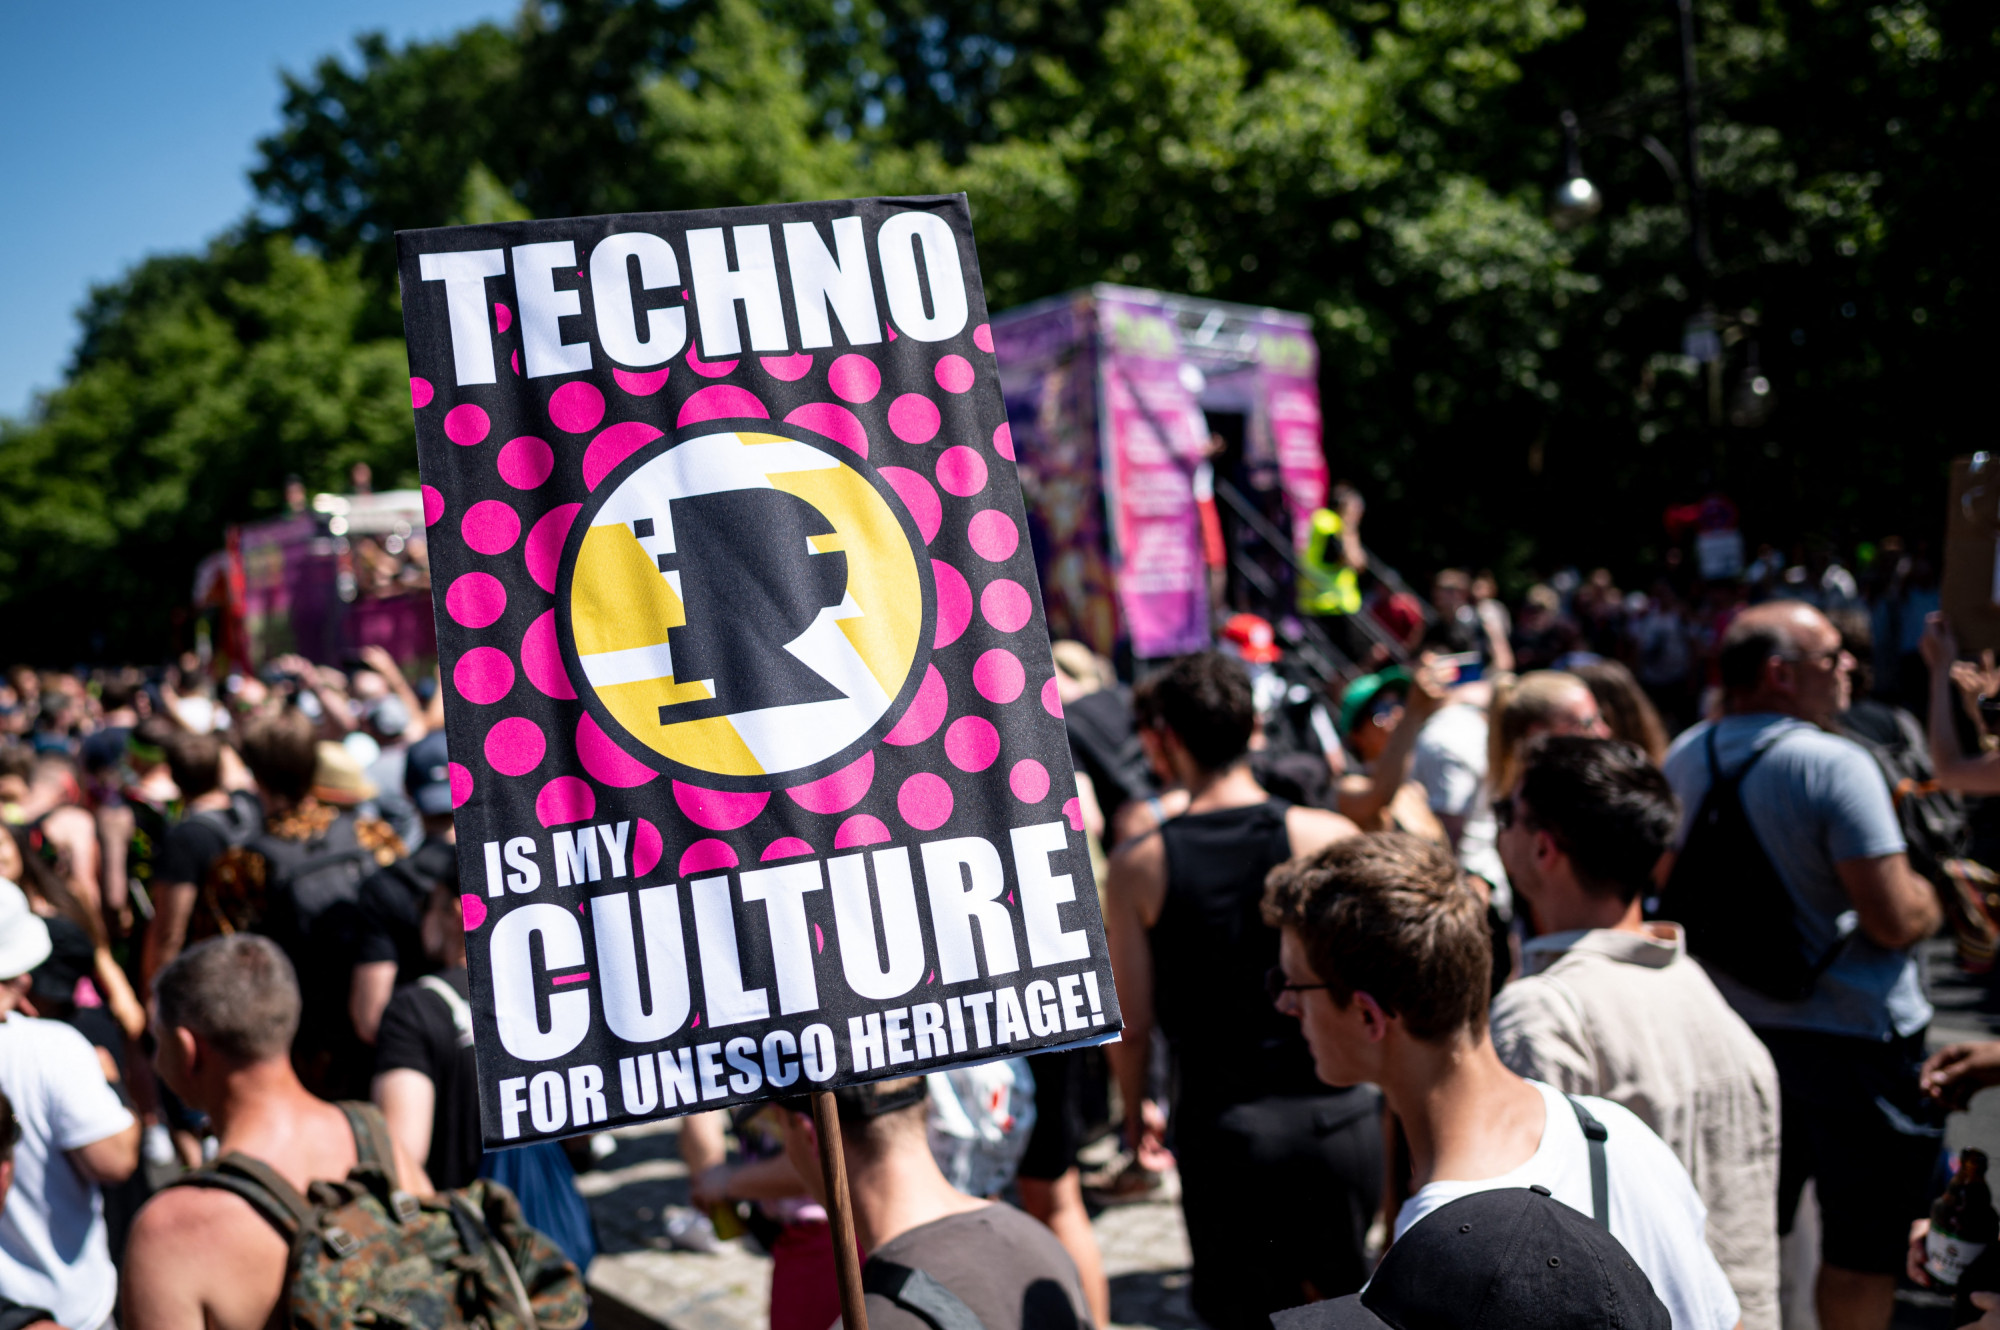 Kulturális örökség lett a berlini techno